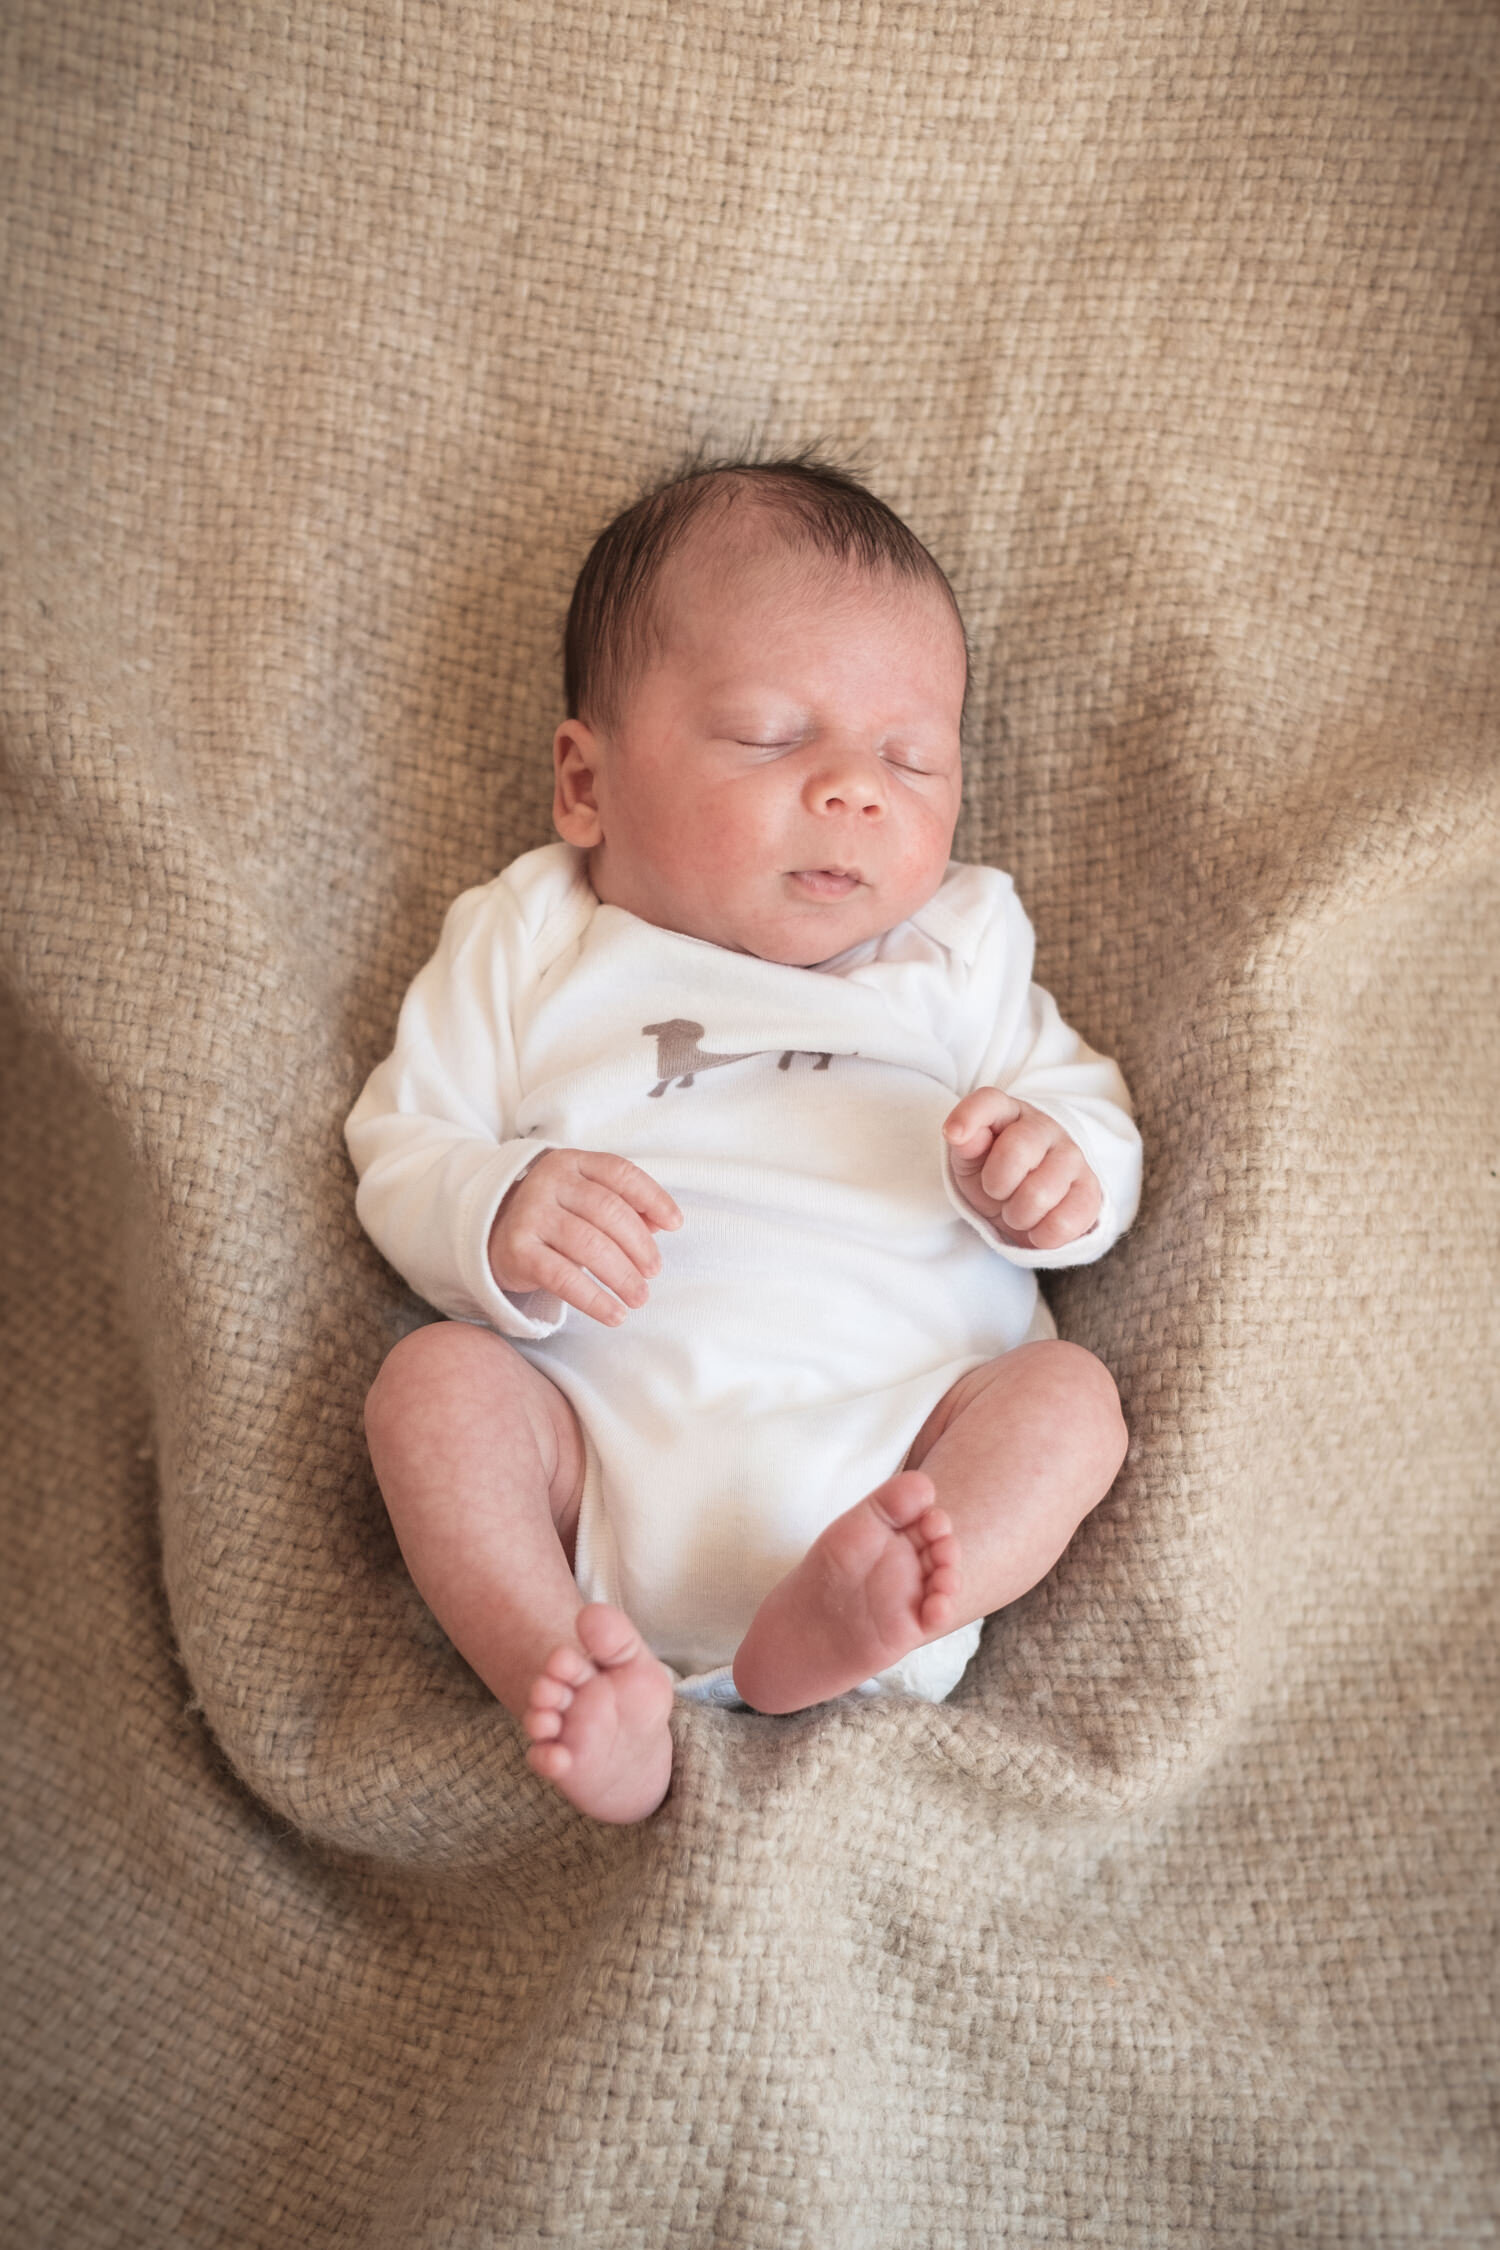 Leonardo Coppola - 1 Week Old - Baby Portrait (Copy)